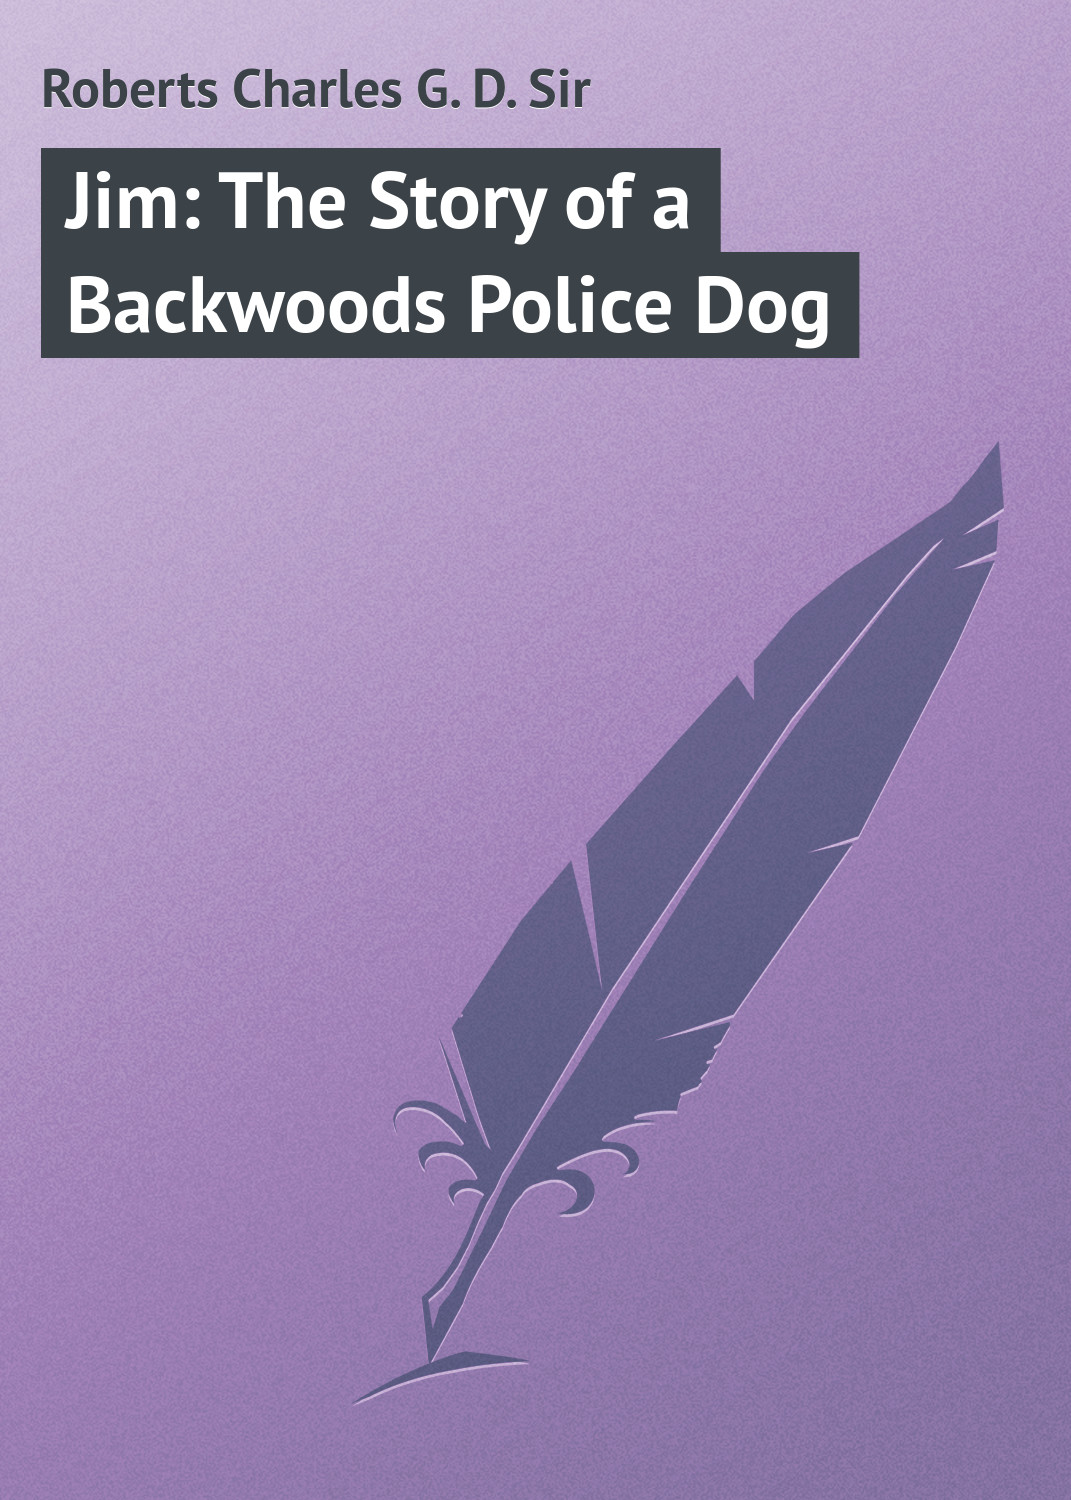 Книга Jim: The Story of a Backwoods Police Dog из серии , созданная Charles Roberts, может относится к жанру Иностранные языки, Зарубежная классика. Стоимость электронной книги Jim: The Story of a Backwoods Police Dog с идентификатором 23171403 составляет 5.99 руб.